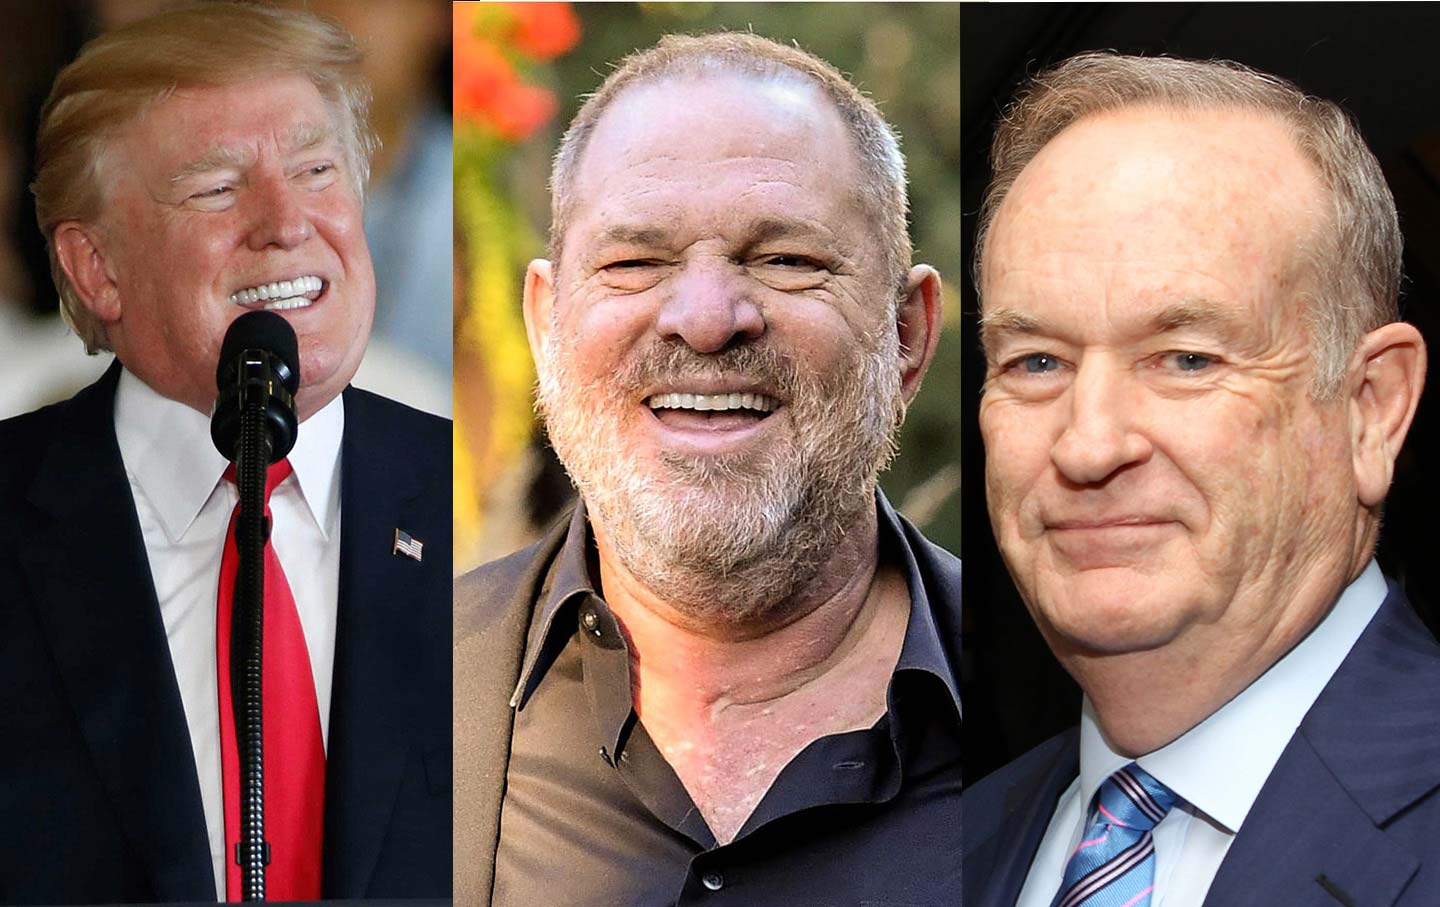 Trump, Weinstein and O’Reilly